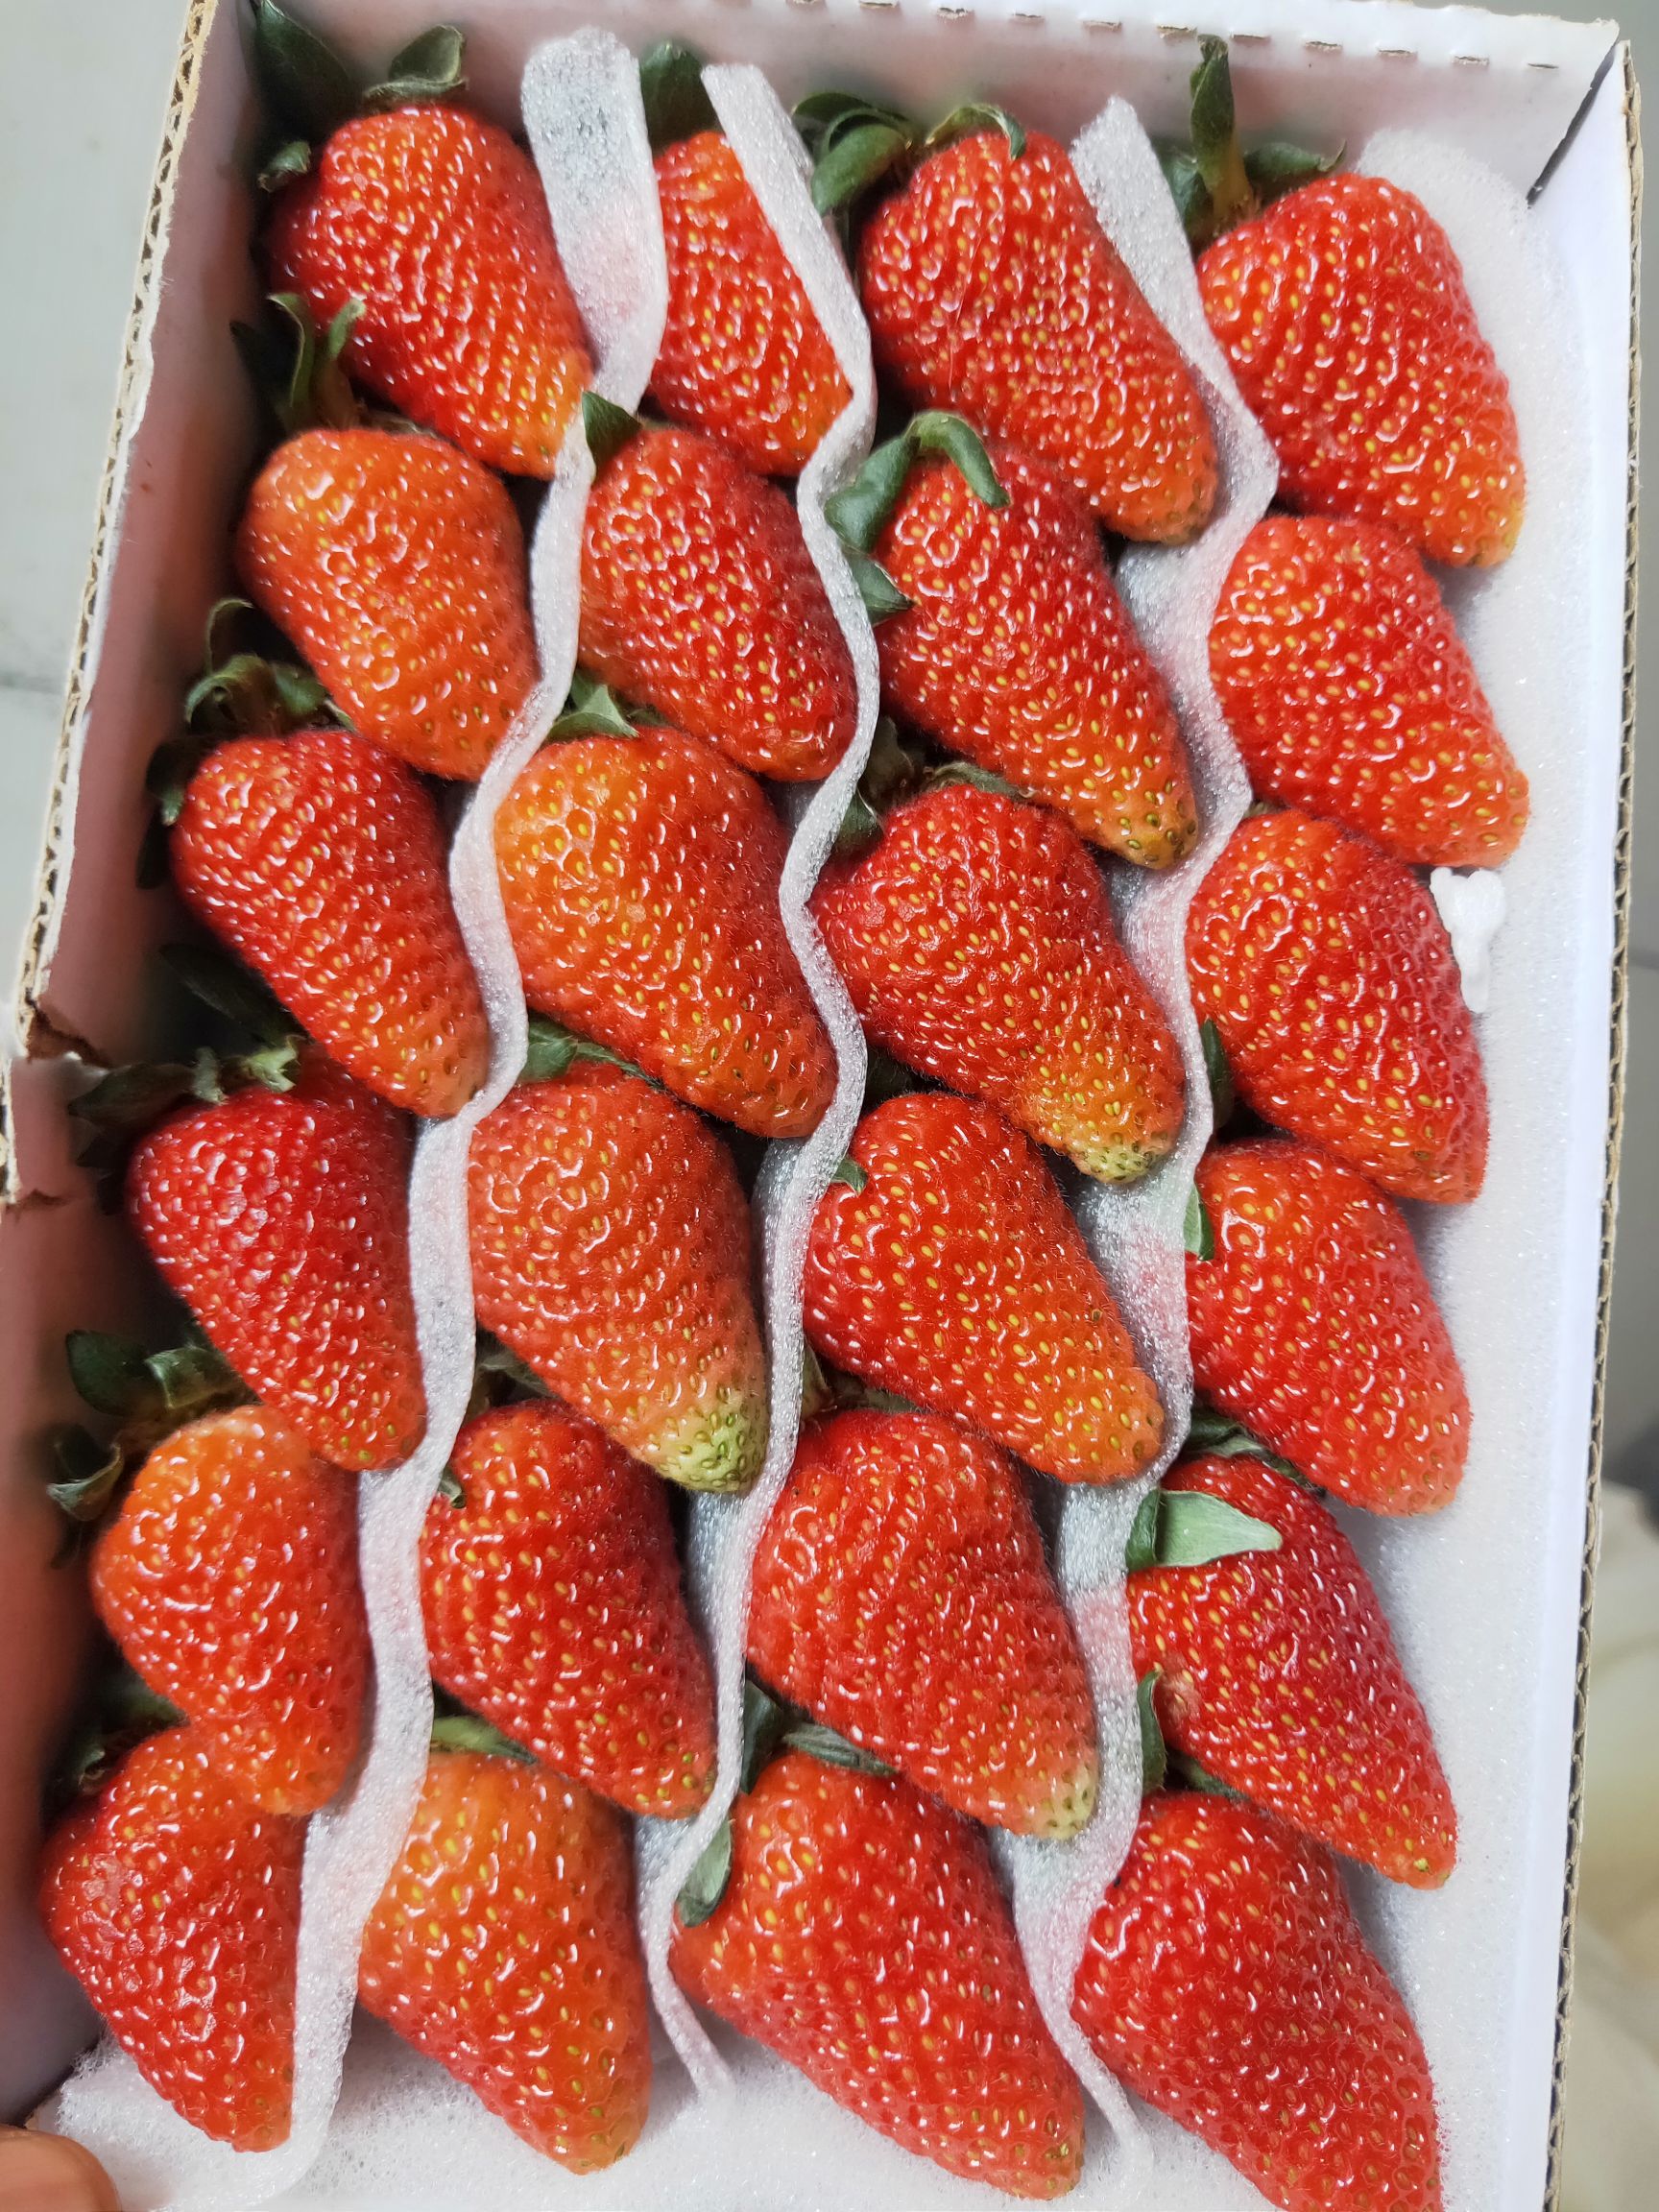 [蒙特瑞草莓批发]蒙特瑞草莓 30克以上价格9元/盒 